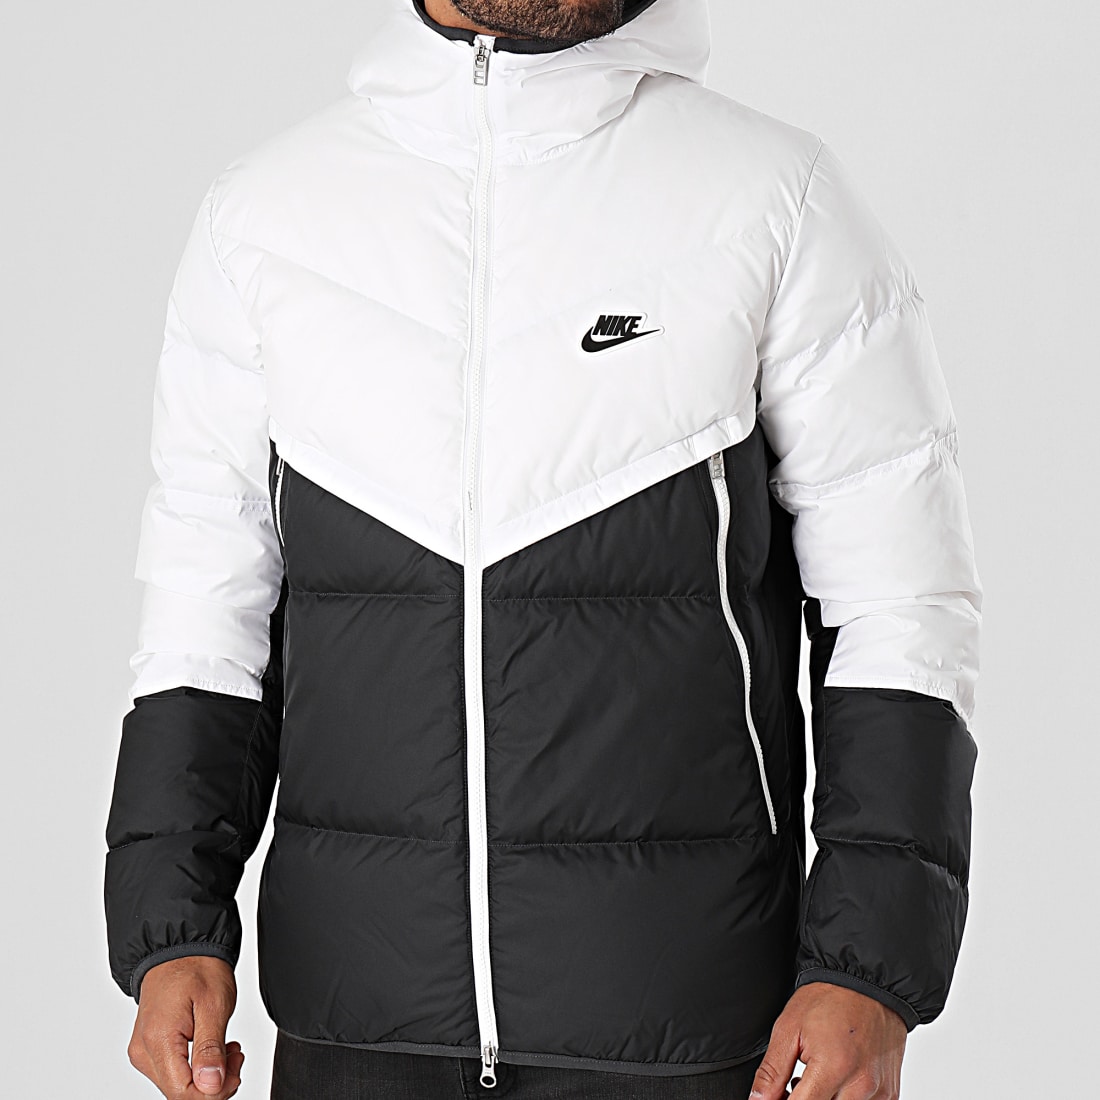 Vestes et manteaux Nike Homme